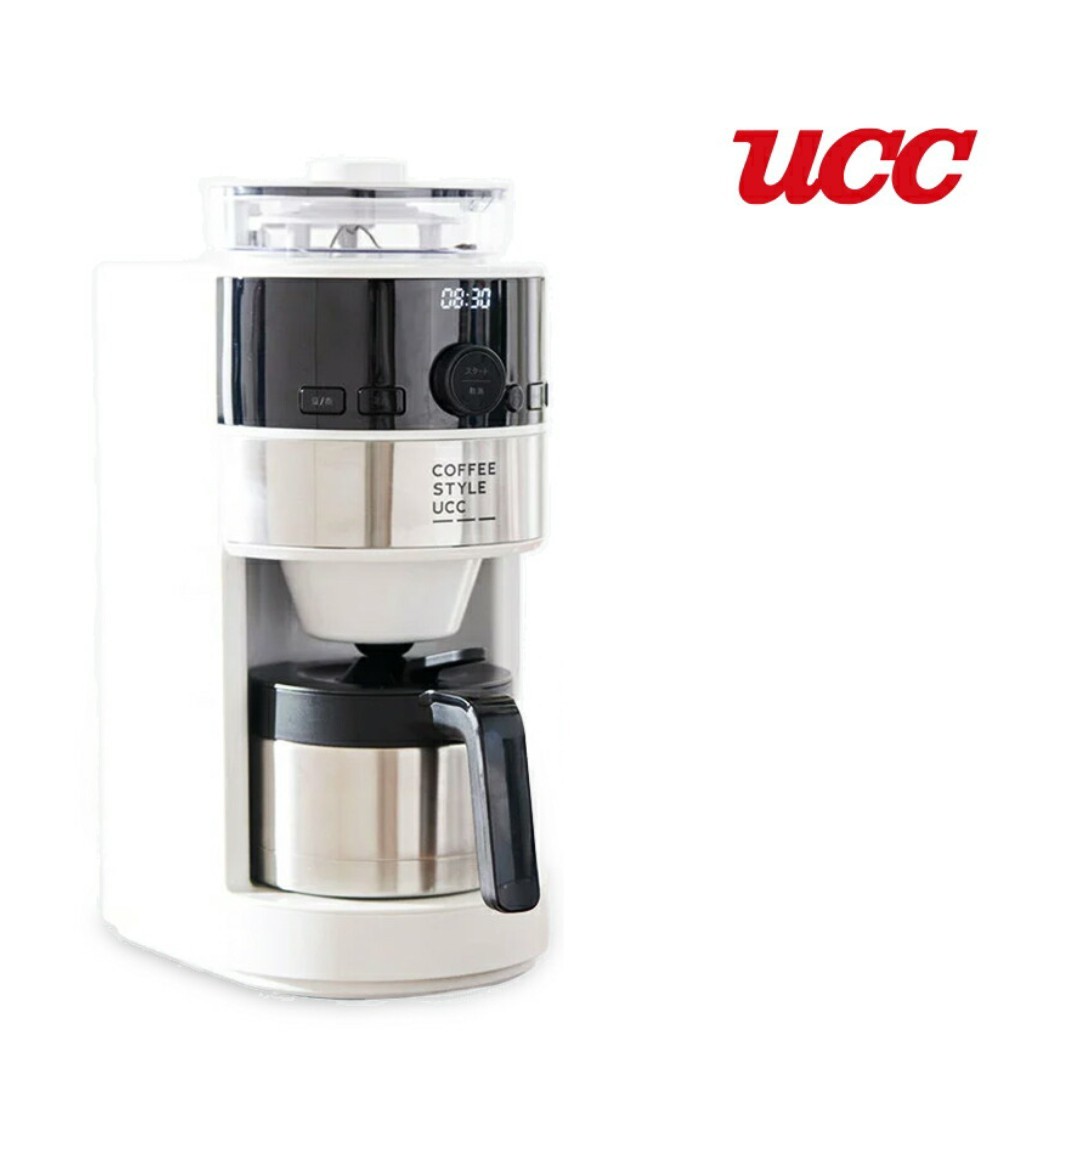 シロカ コーン式 全自動コーヒーメーカー ミル付き コーヒーマシン (SC-C124・UCC限定仕様) 